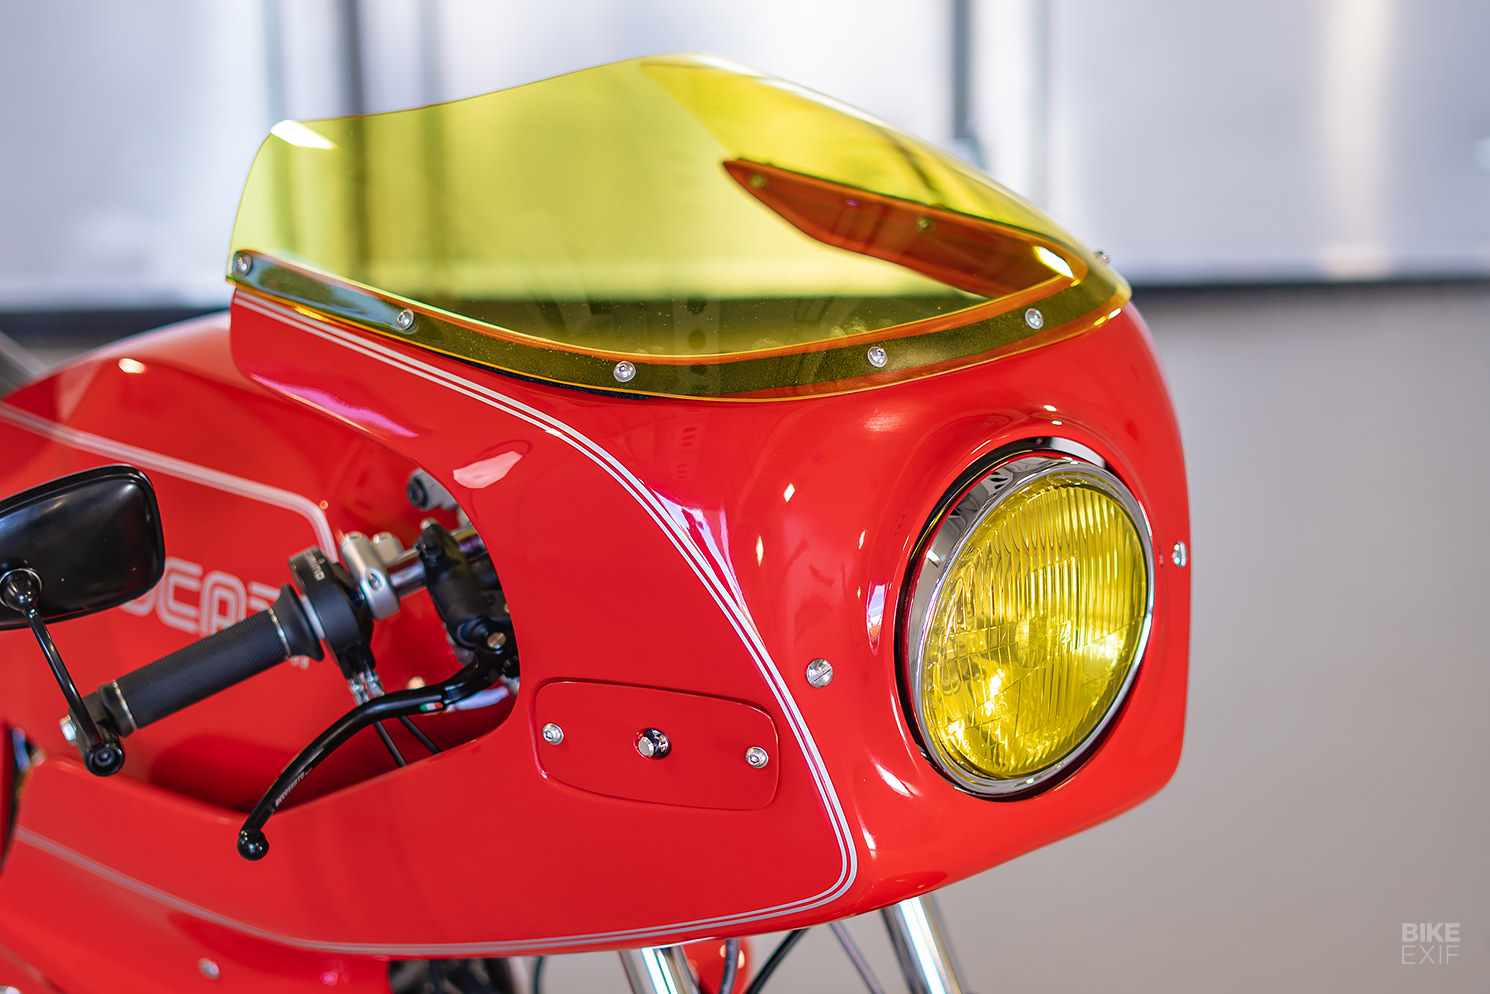 Ducati Pantah restomod by Purpose Built Moto